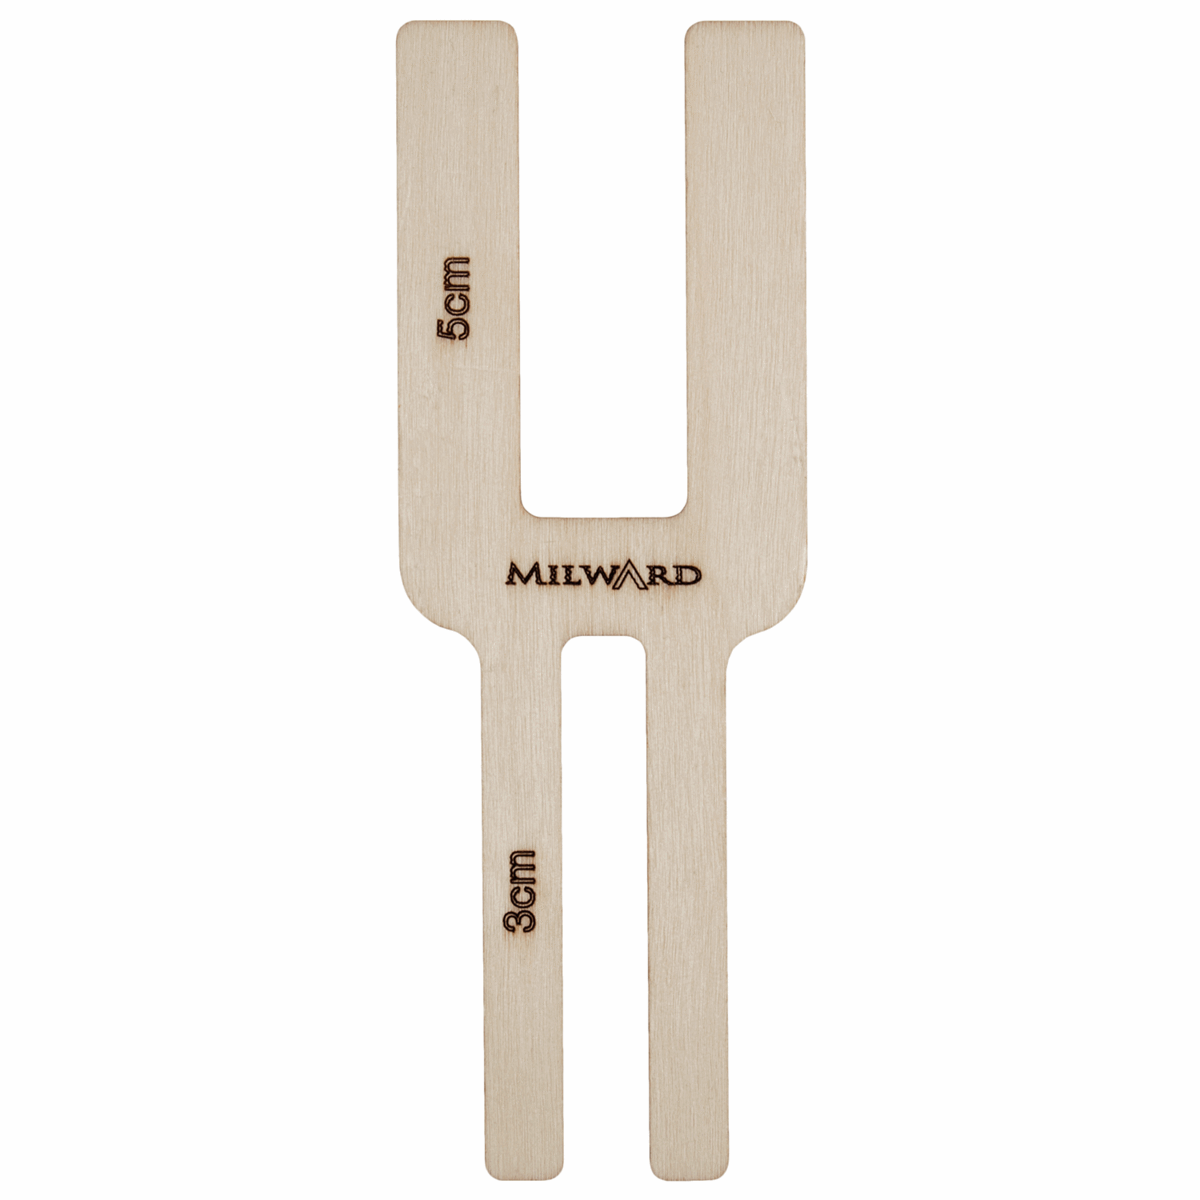 Milward Wooden Pom Pom Maker - Dual Size 3cm & 5cm